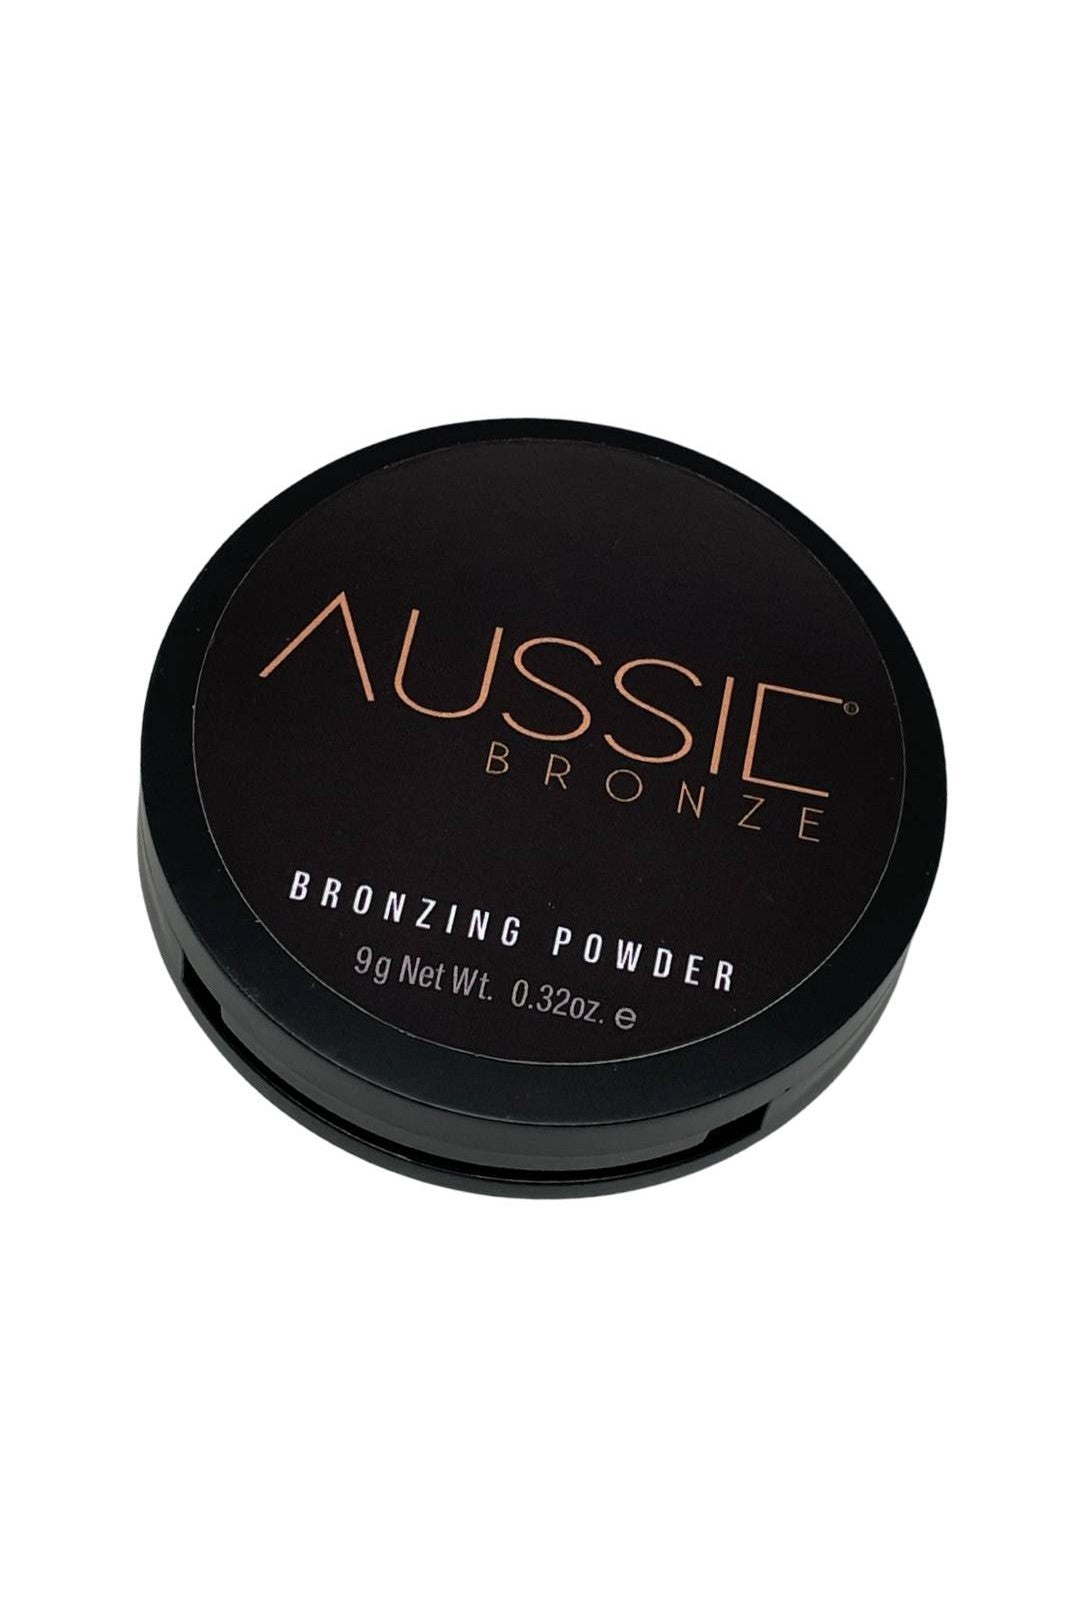 Aussie Bronze Bronzing Powder